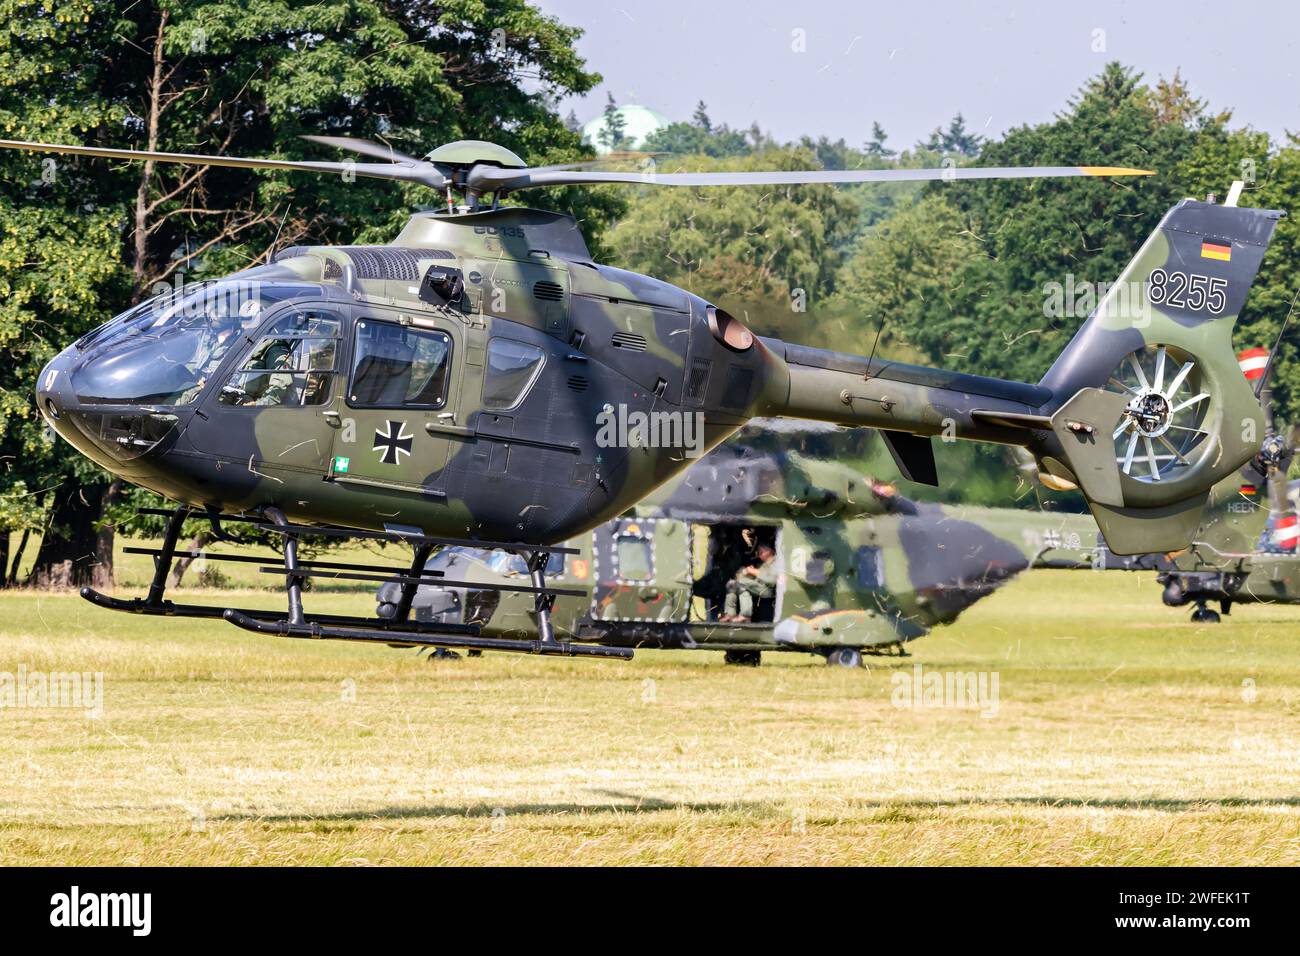 Airbus H135 hélicoptère utilitaire militaire de l'armée allemande au décollage. Allemagne - 9 juin 2018 Banque D'Images